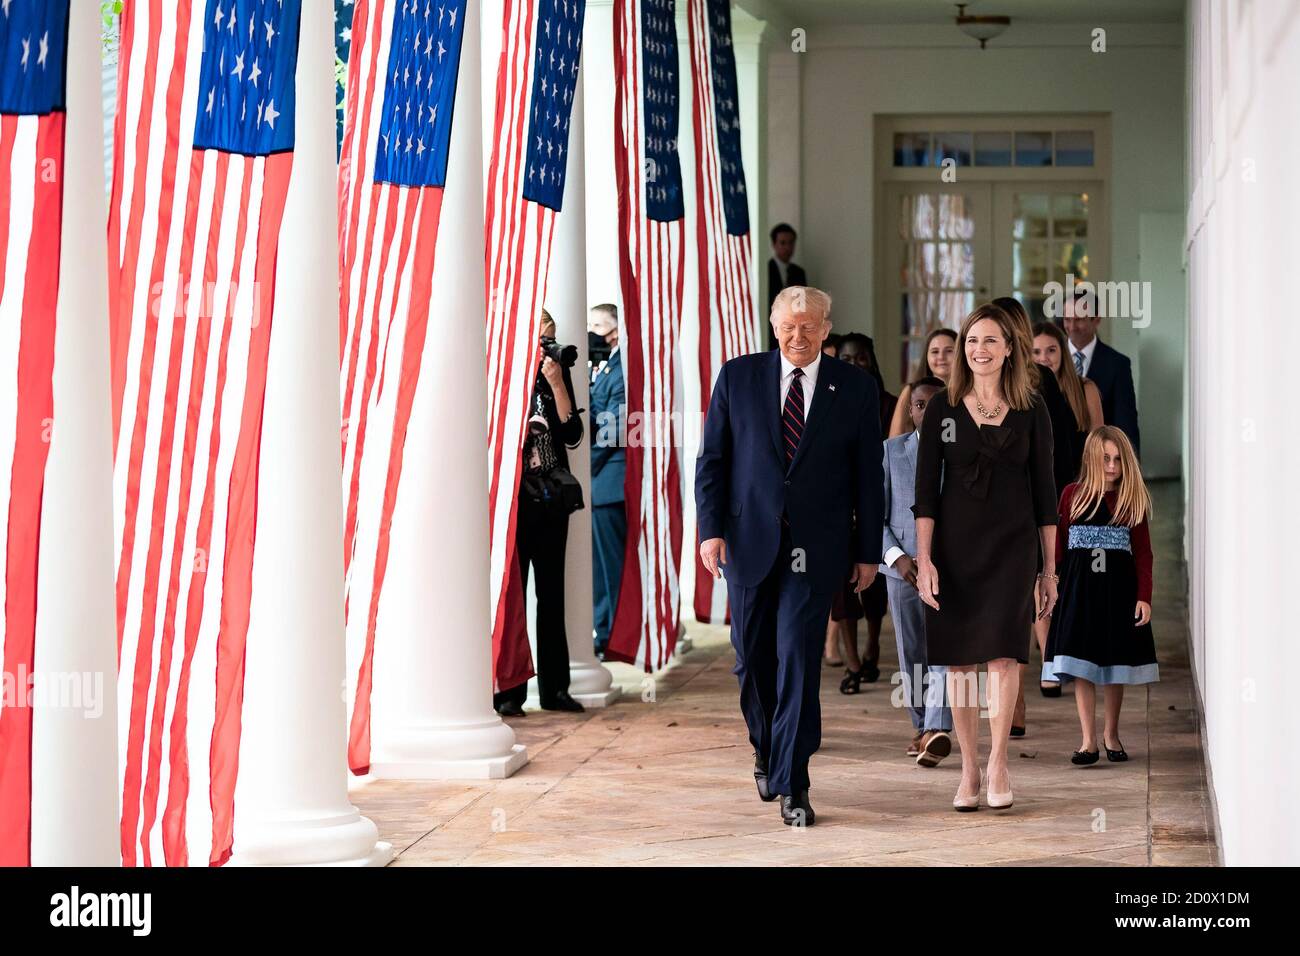 Präsident Donald J. Trump geht am Samstag, dem 26. September 2020, nach den Ankündigungszeremonien im Rosengarten mit Richterin Amy Coney Barrett, seiner Nominierten für das Associate Justice des Obersten Gerichtshofs der Vereinigten Staaten, entlang der West Wing Colonnade. (USA) Stockfoto